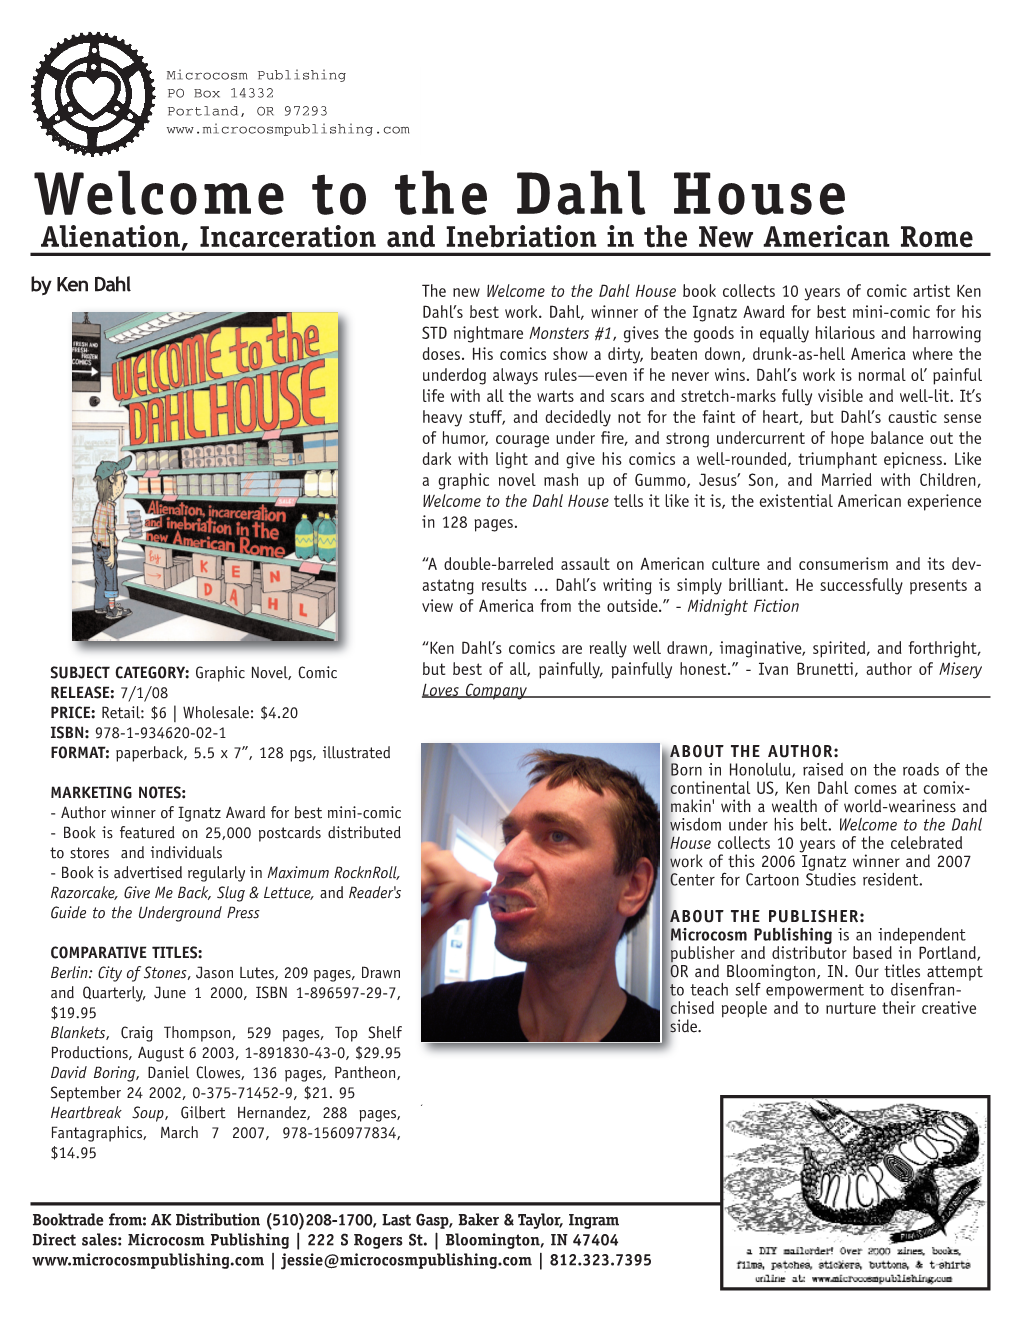 The Dahl House